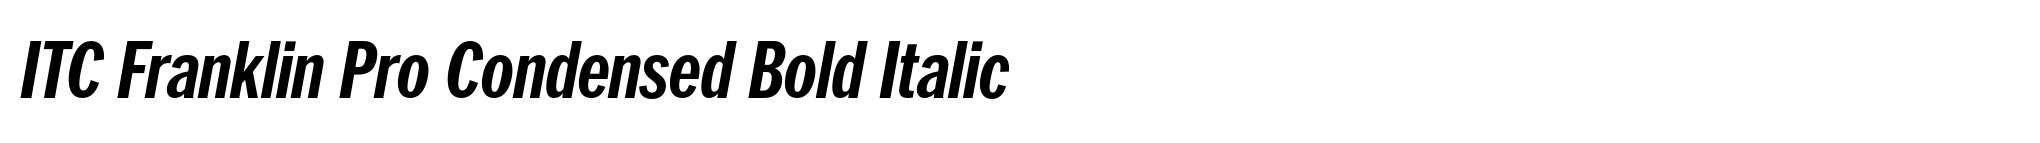 ITC Franklin Pro Condensed Bold Italic image